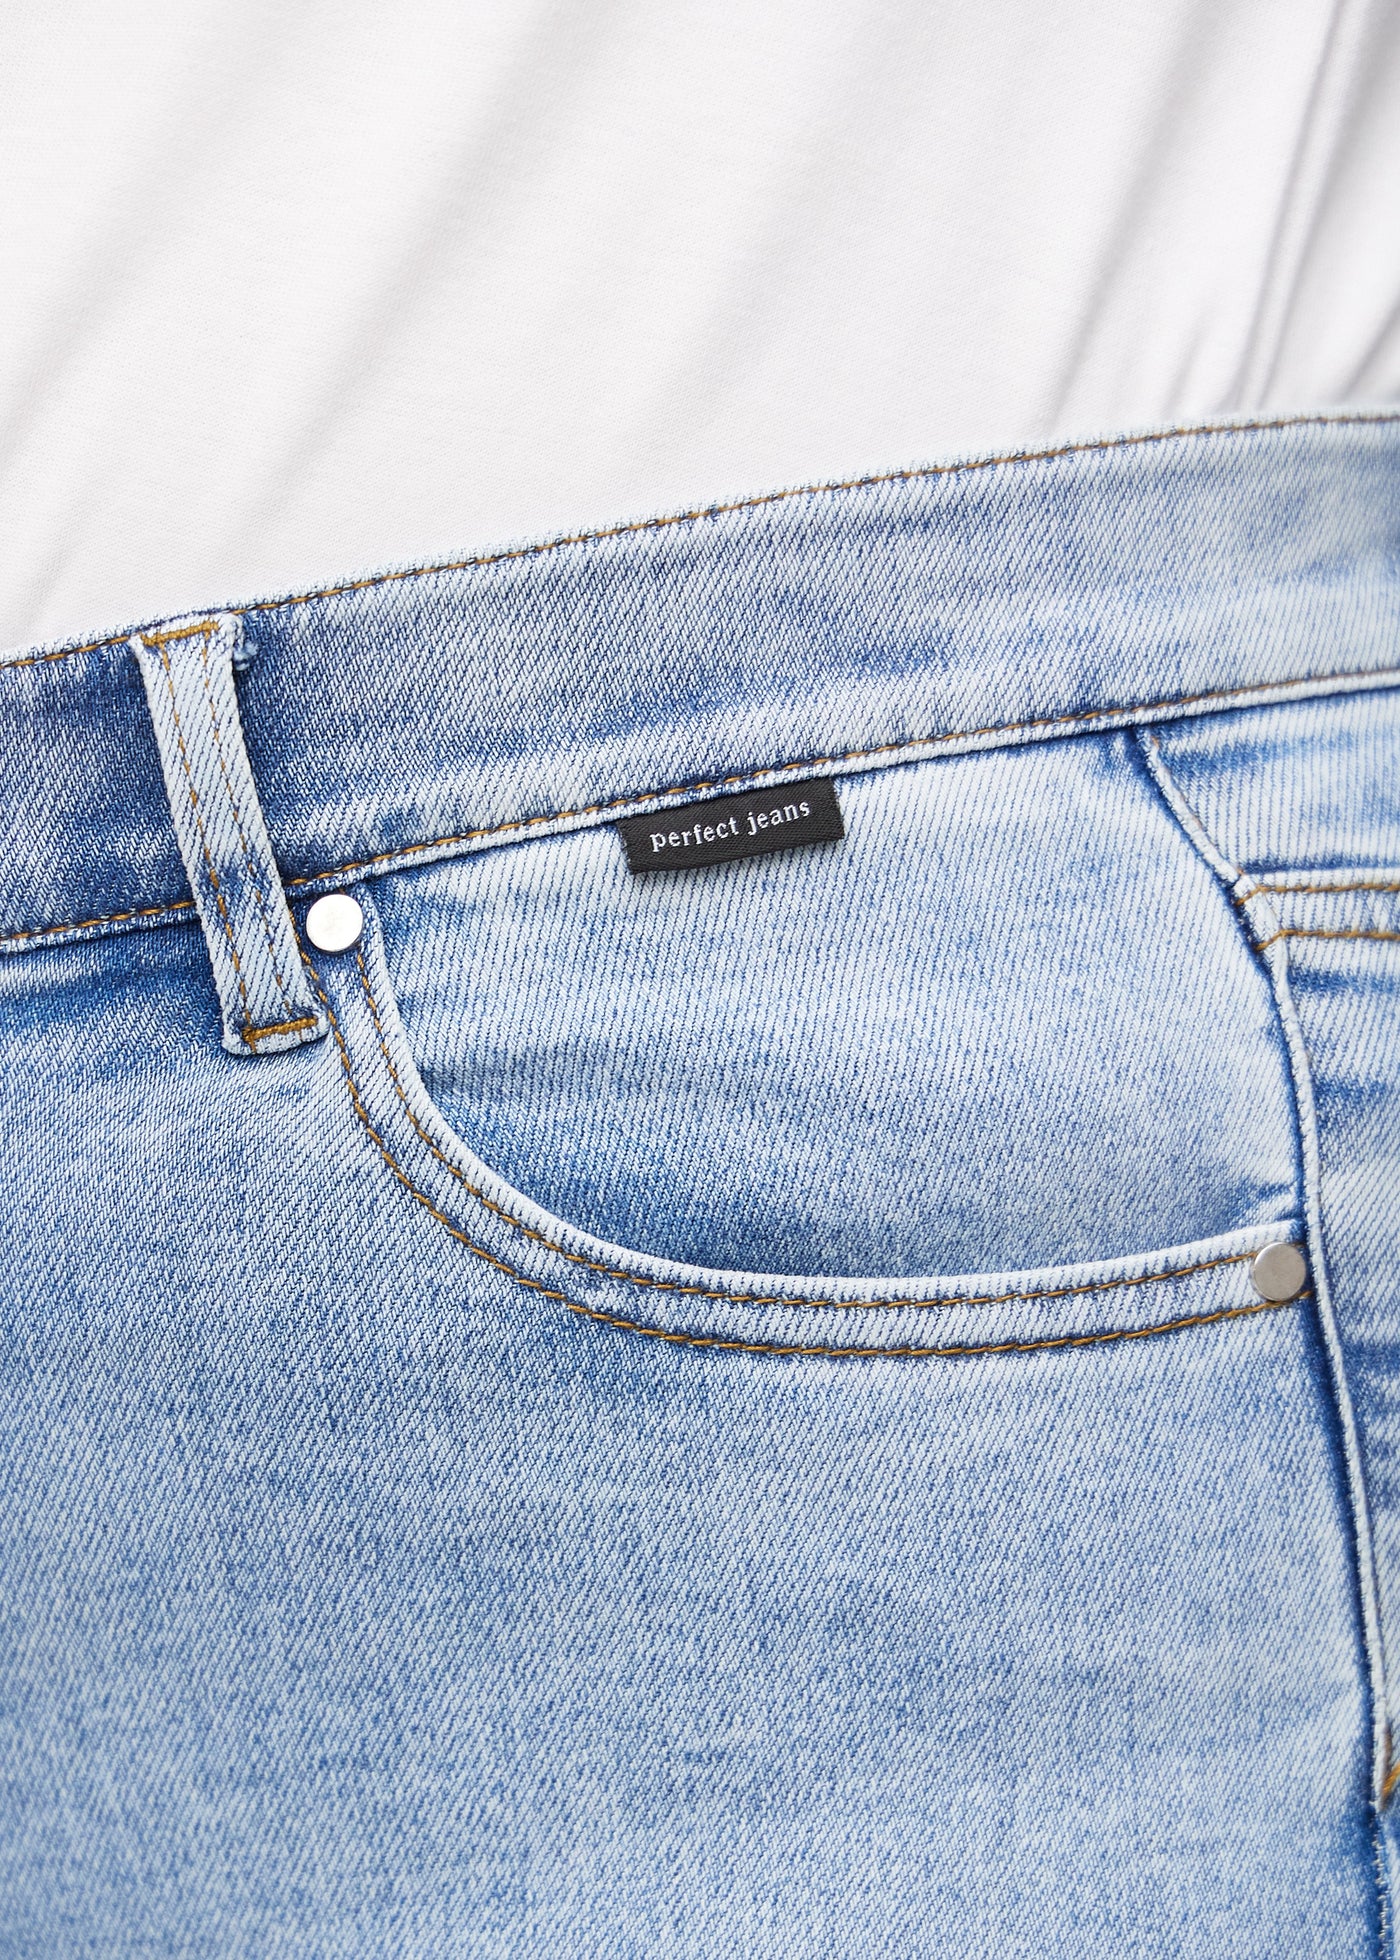 Forlommen på et par lys denim loose jeans, hvor man kan se logoet på en plus-size model.